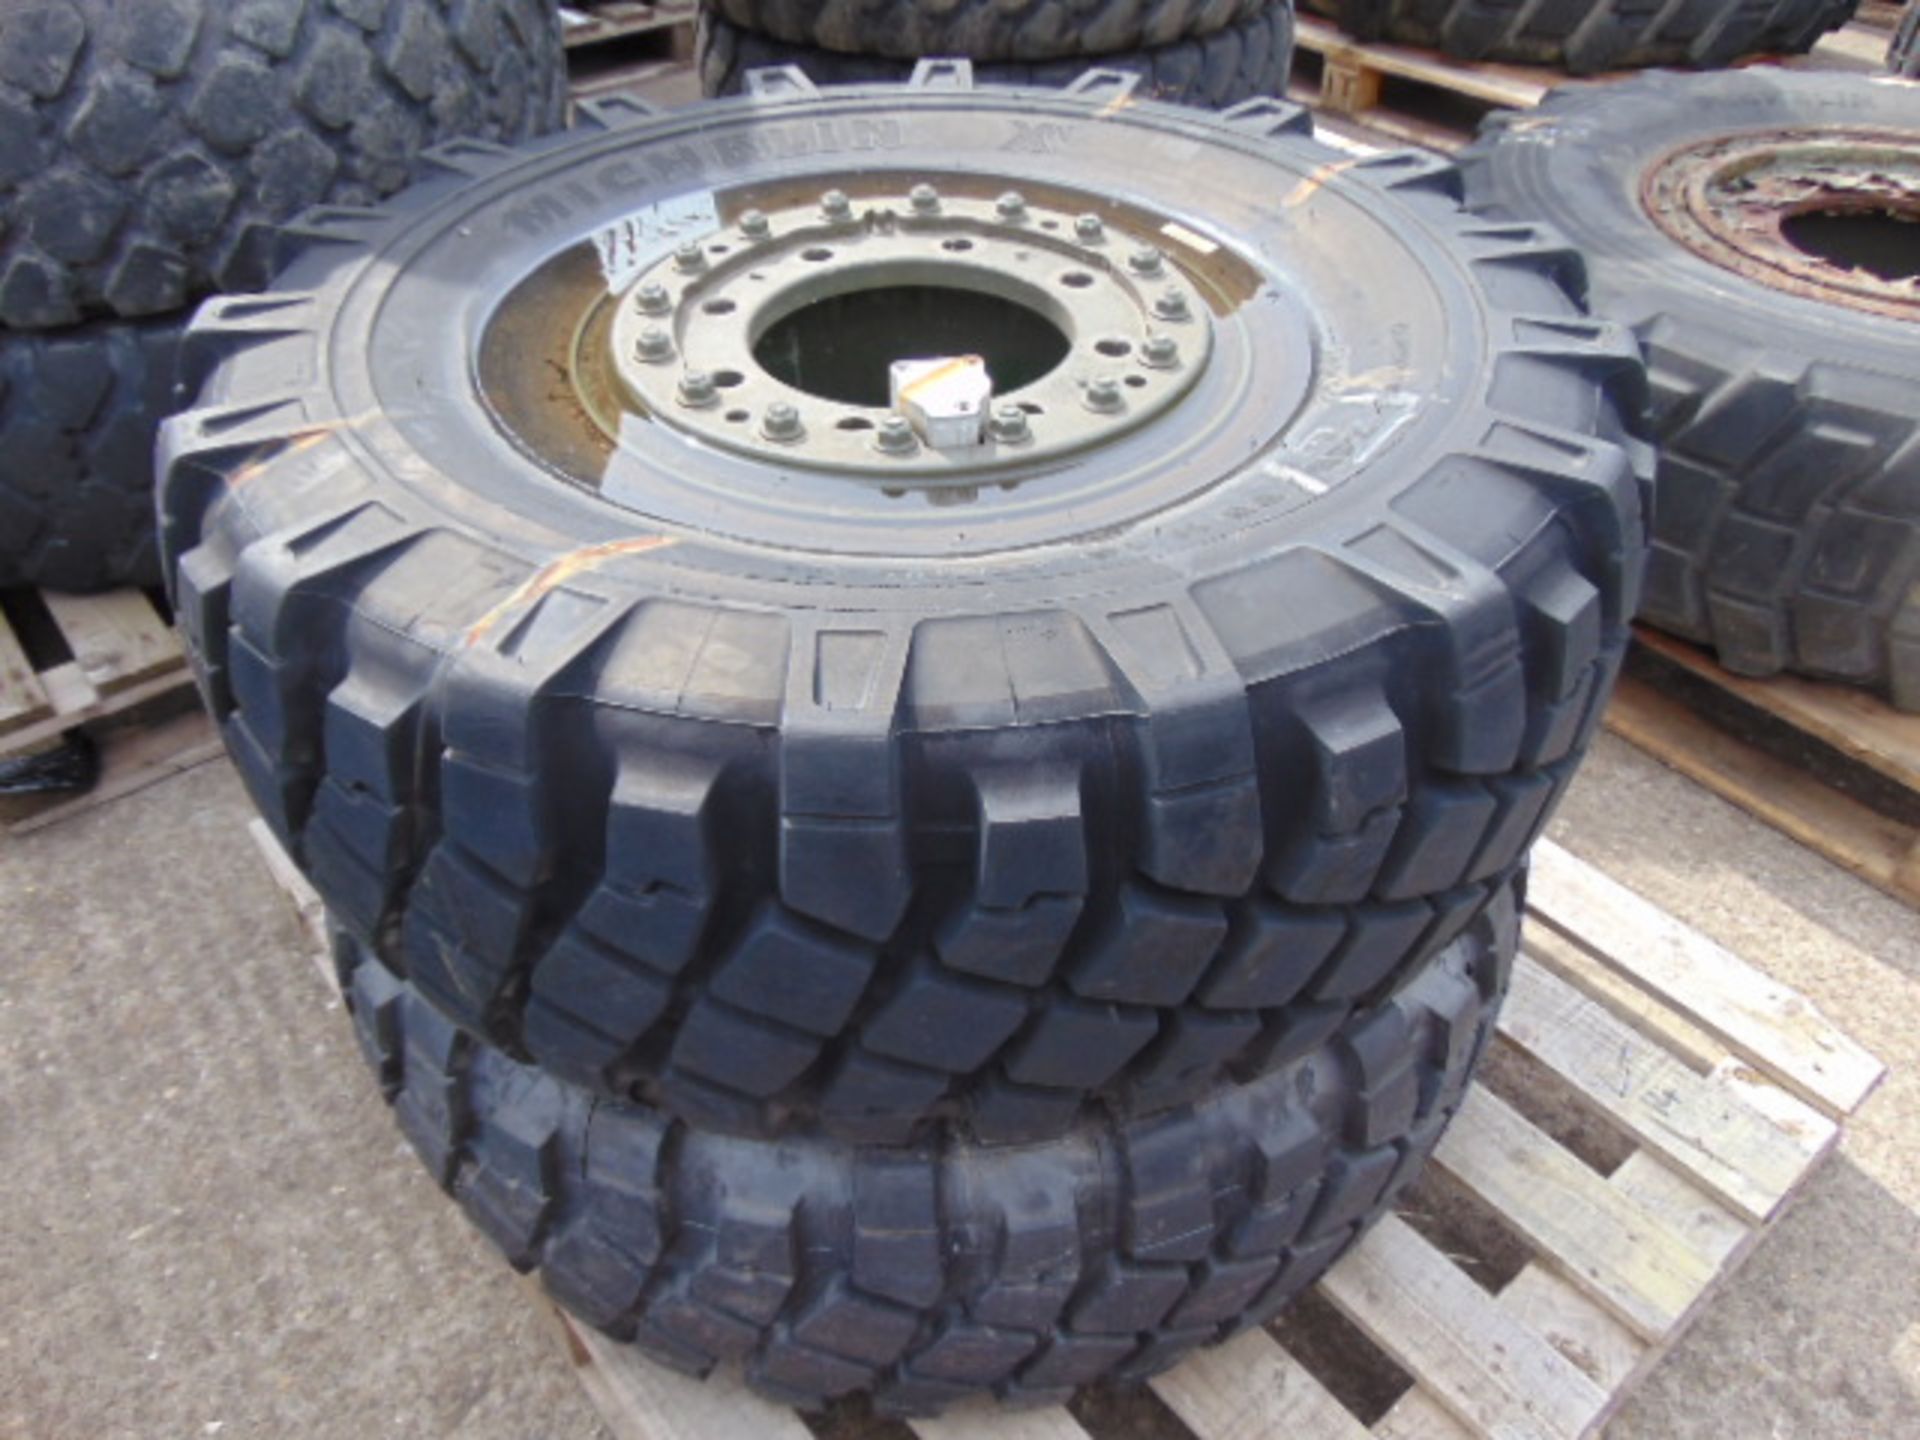 2 x Michelin 325/85 R16 XML Tyres on 8 stud Rims